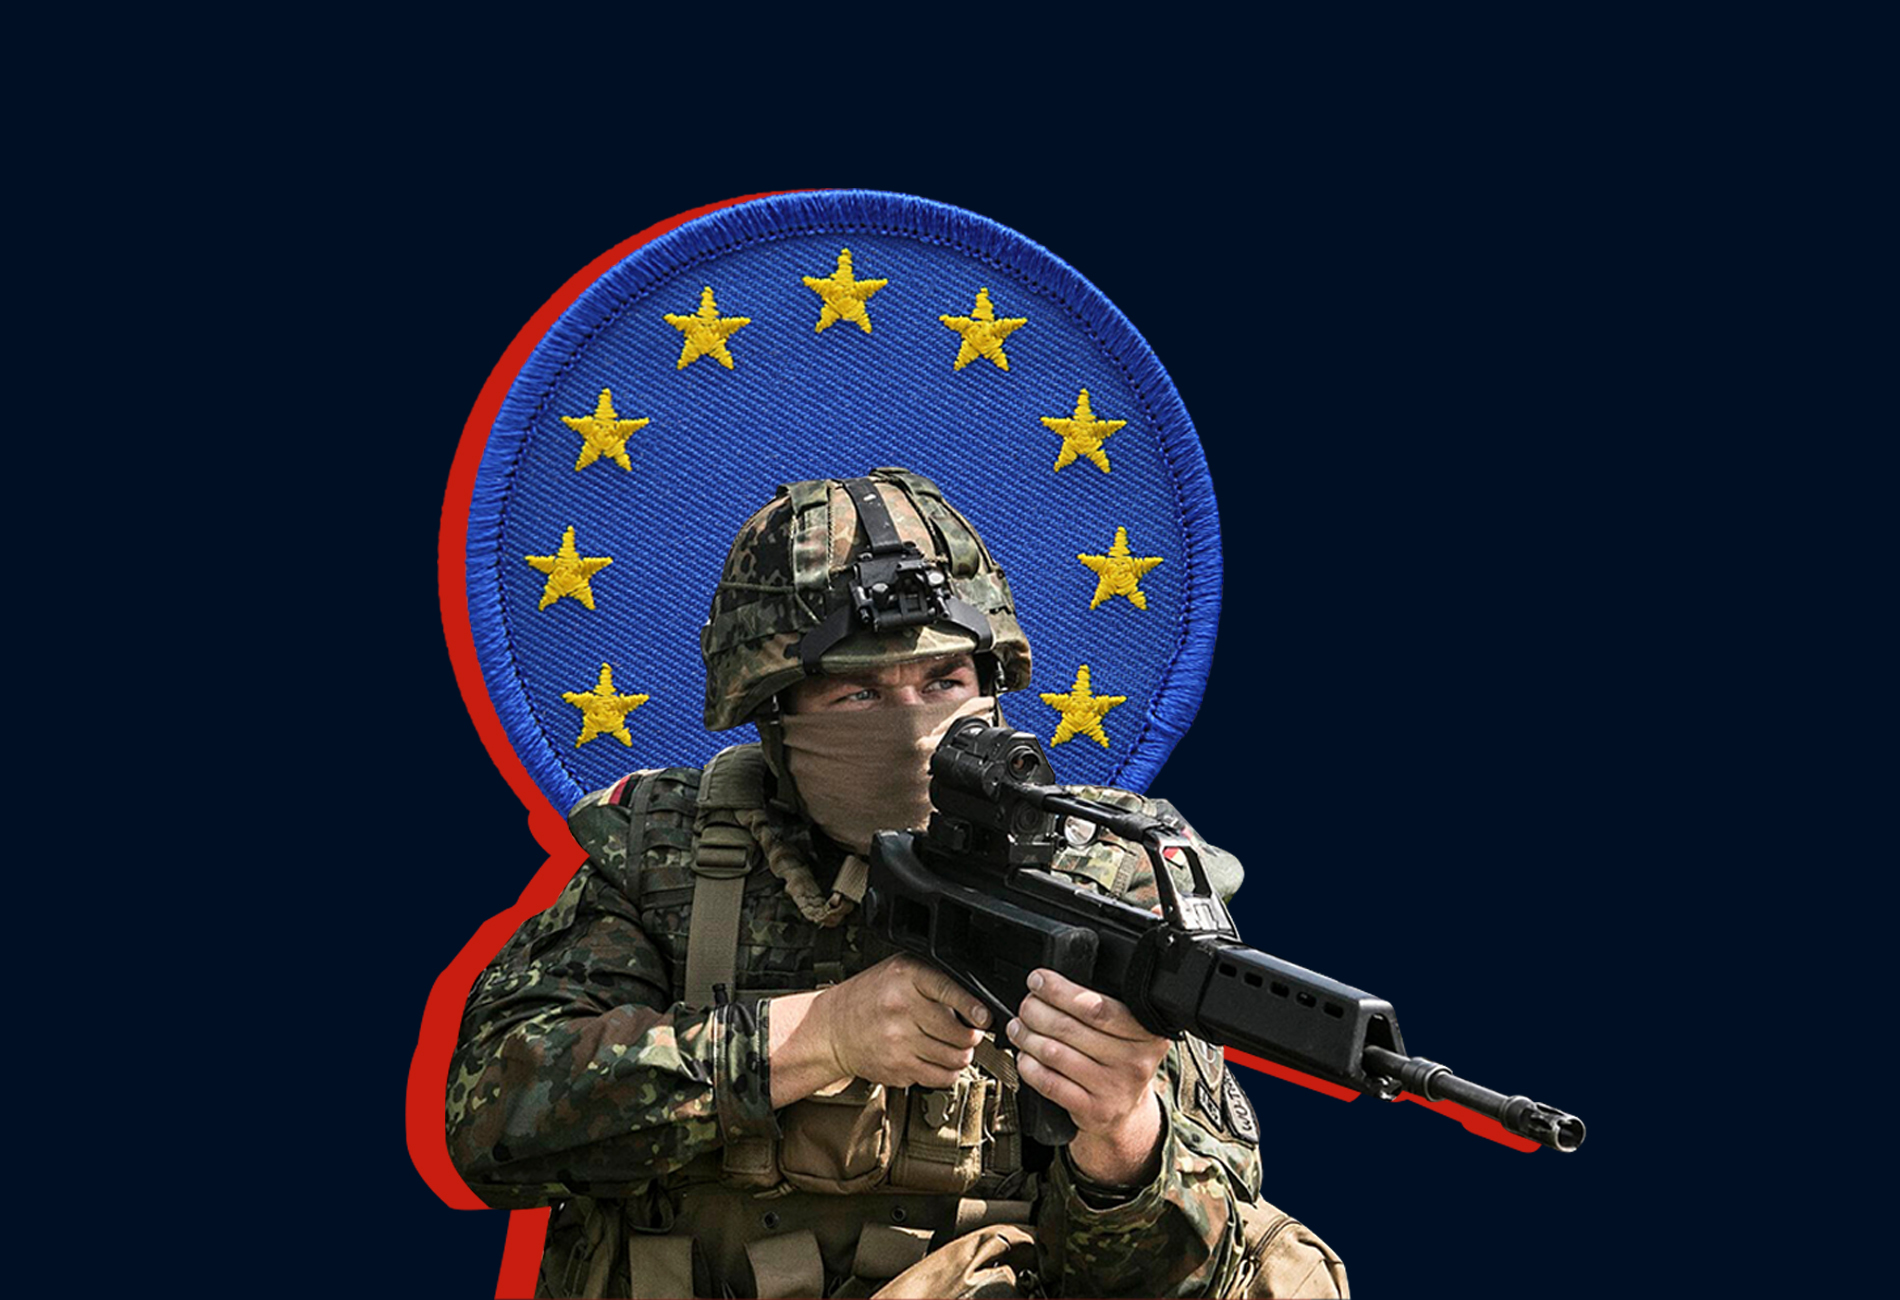 L’esercito europeo tra mito e realtà. Perchè non vedremo mai una “Difesa comune”